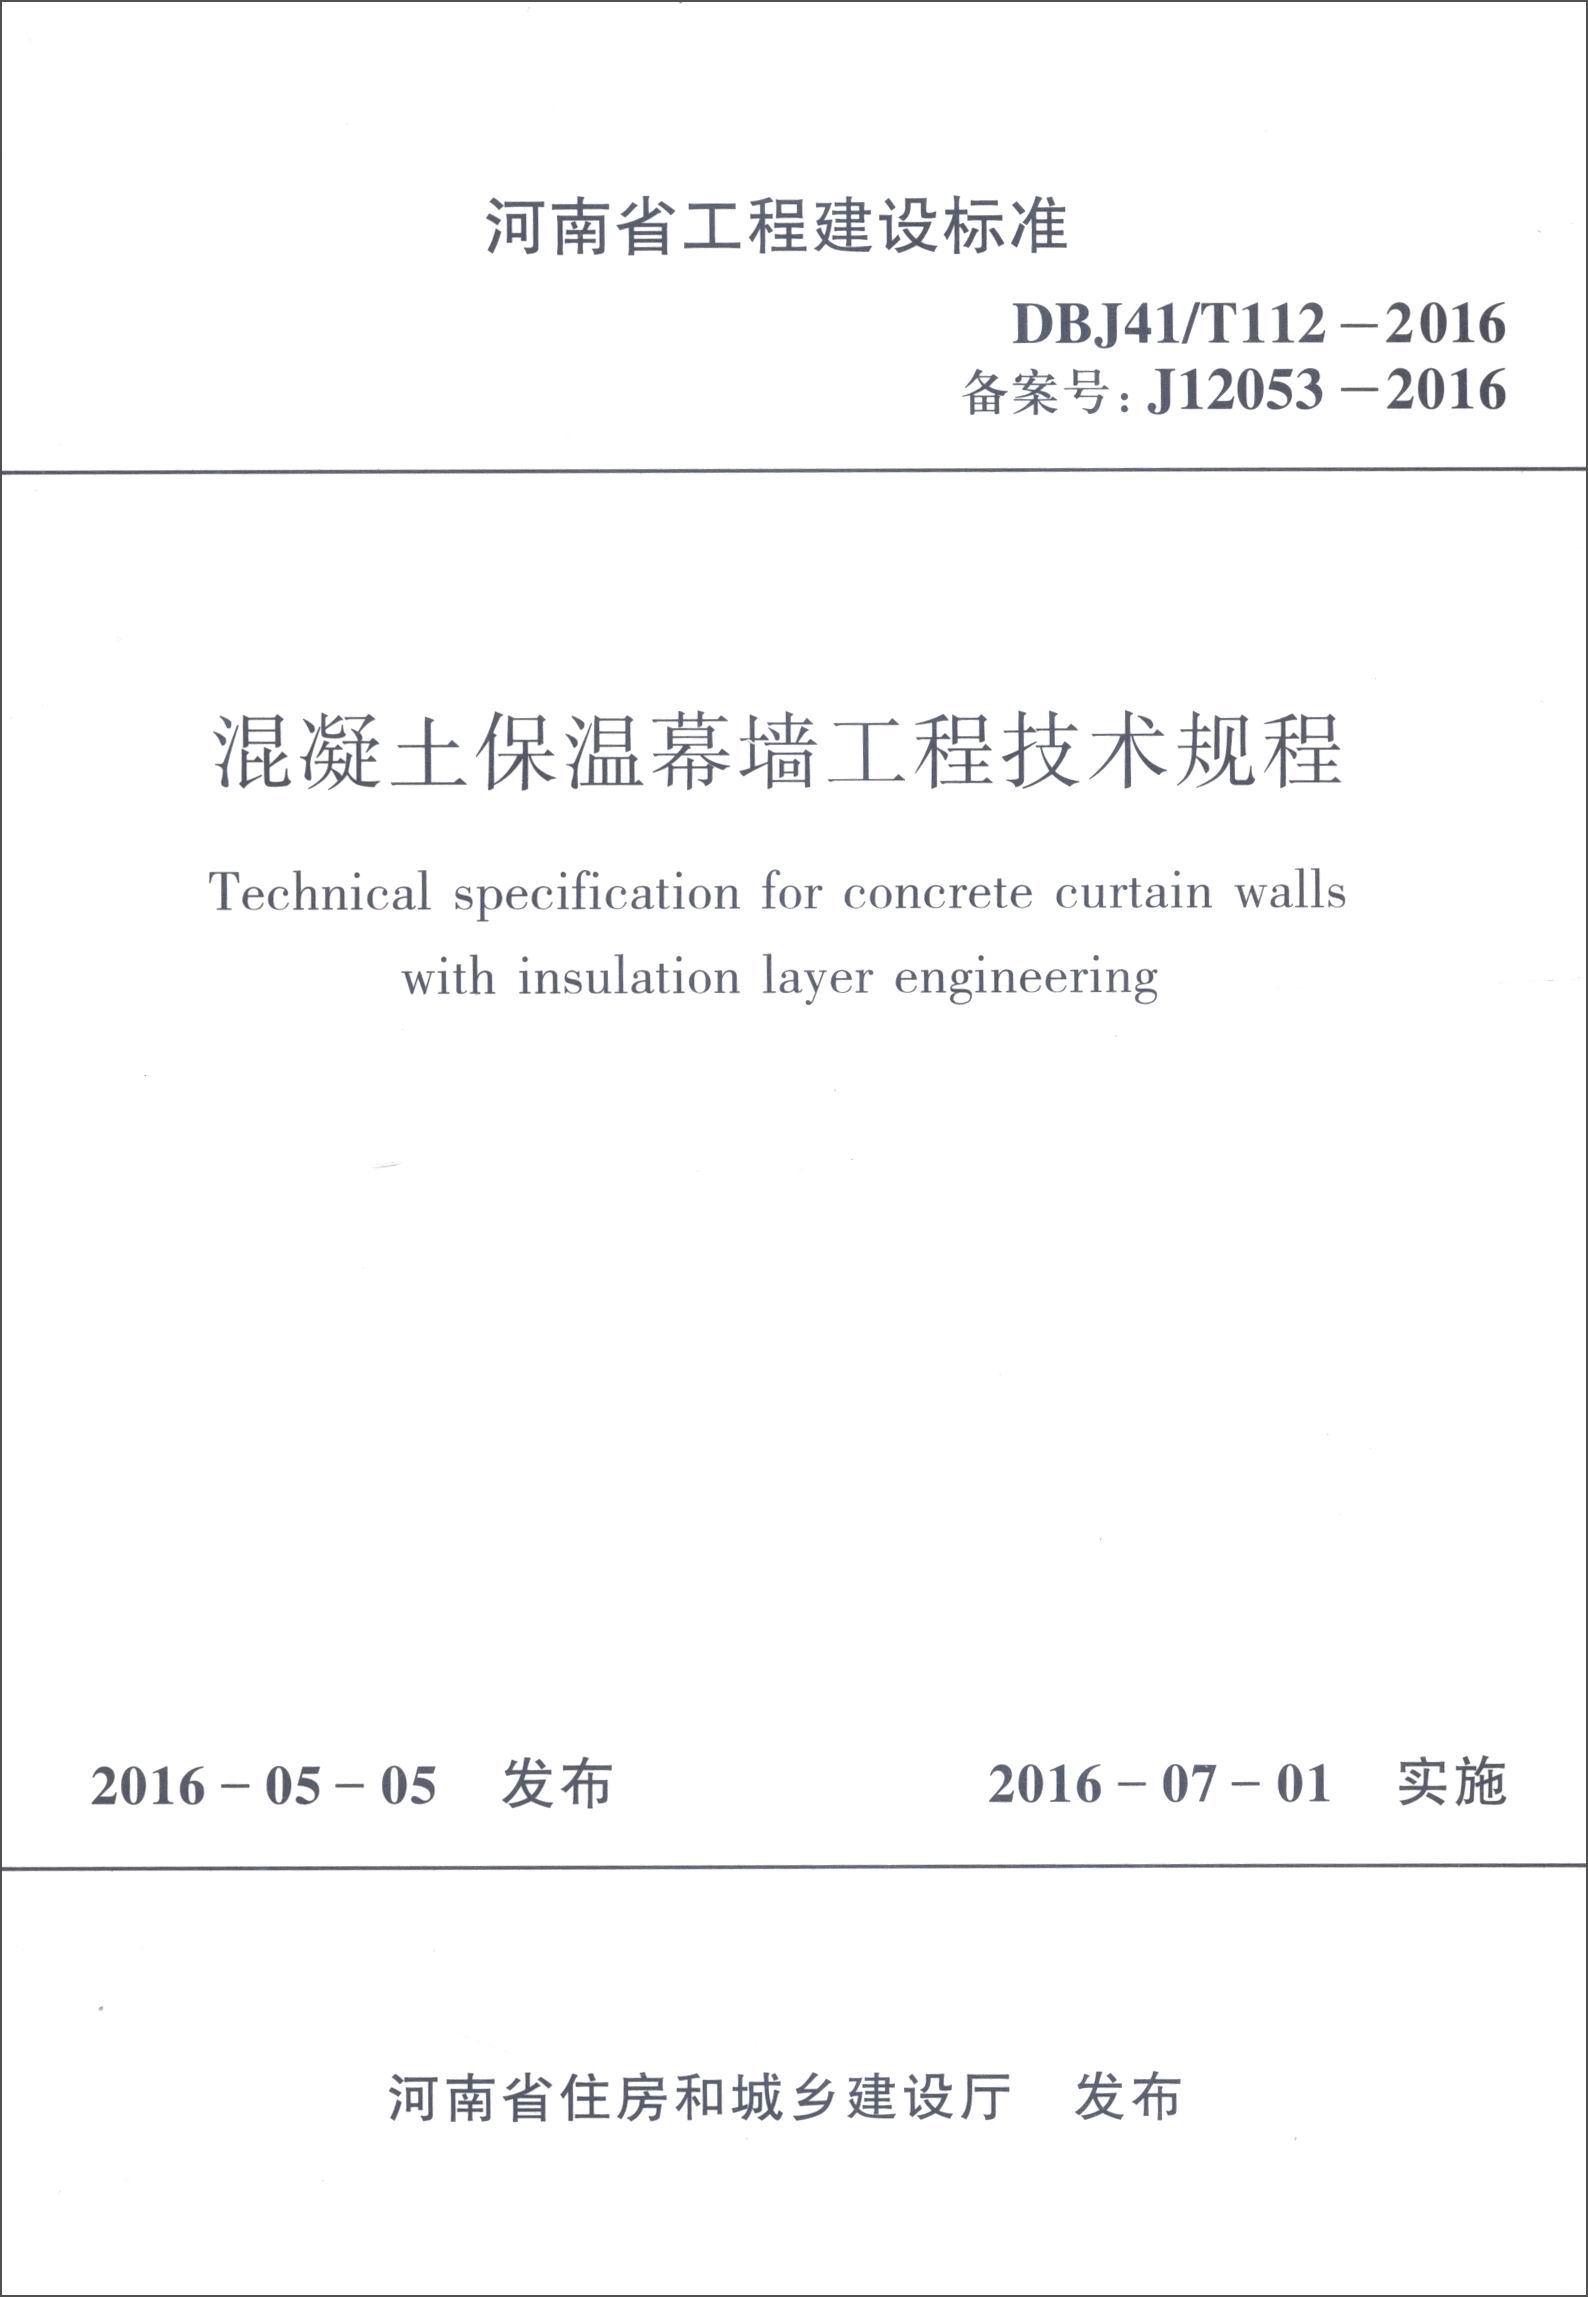 河南省工程建设标准：混凝土保温幕墙工程技术规程（DBJ41/T112-2016 备案号：J12053-2016） azw3格式下载